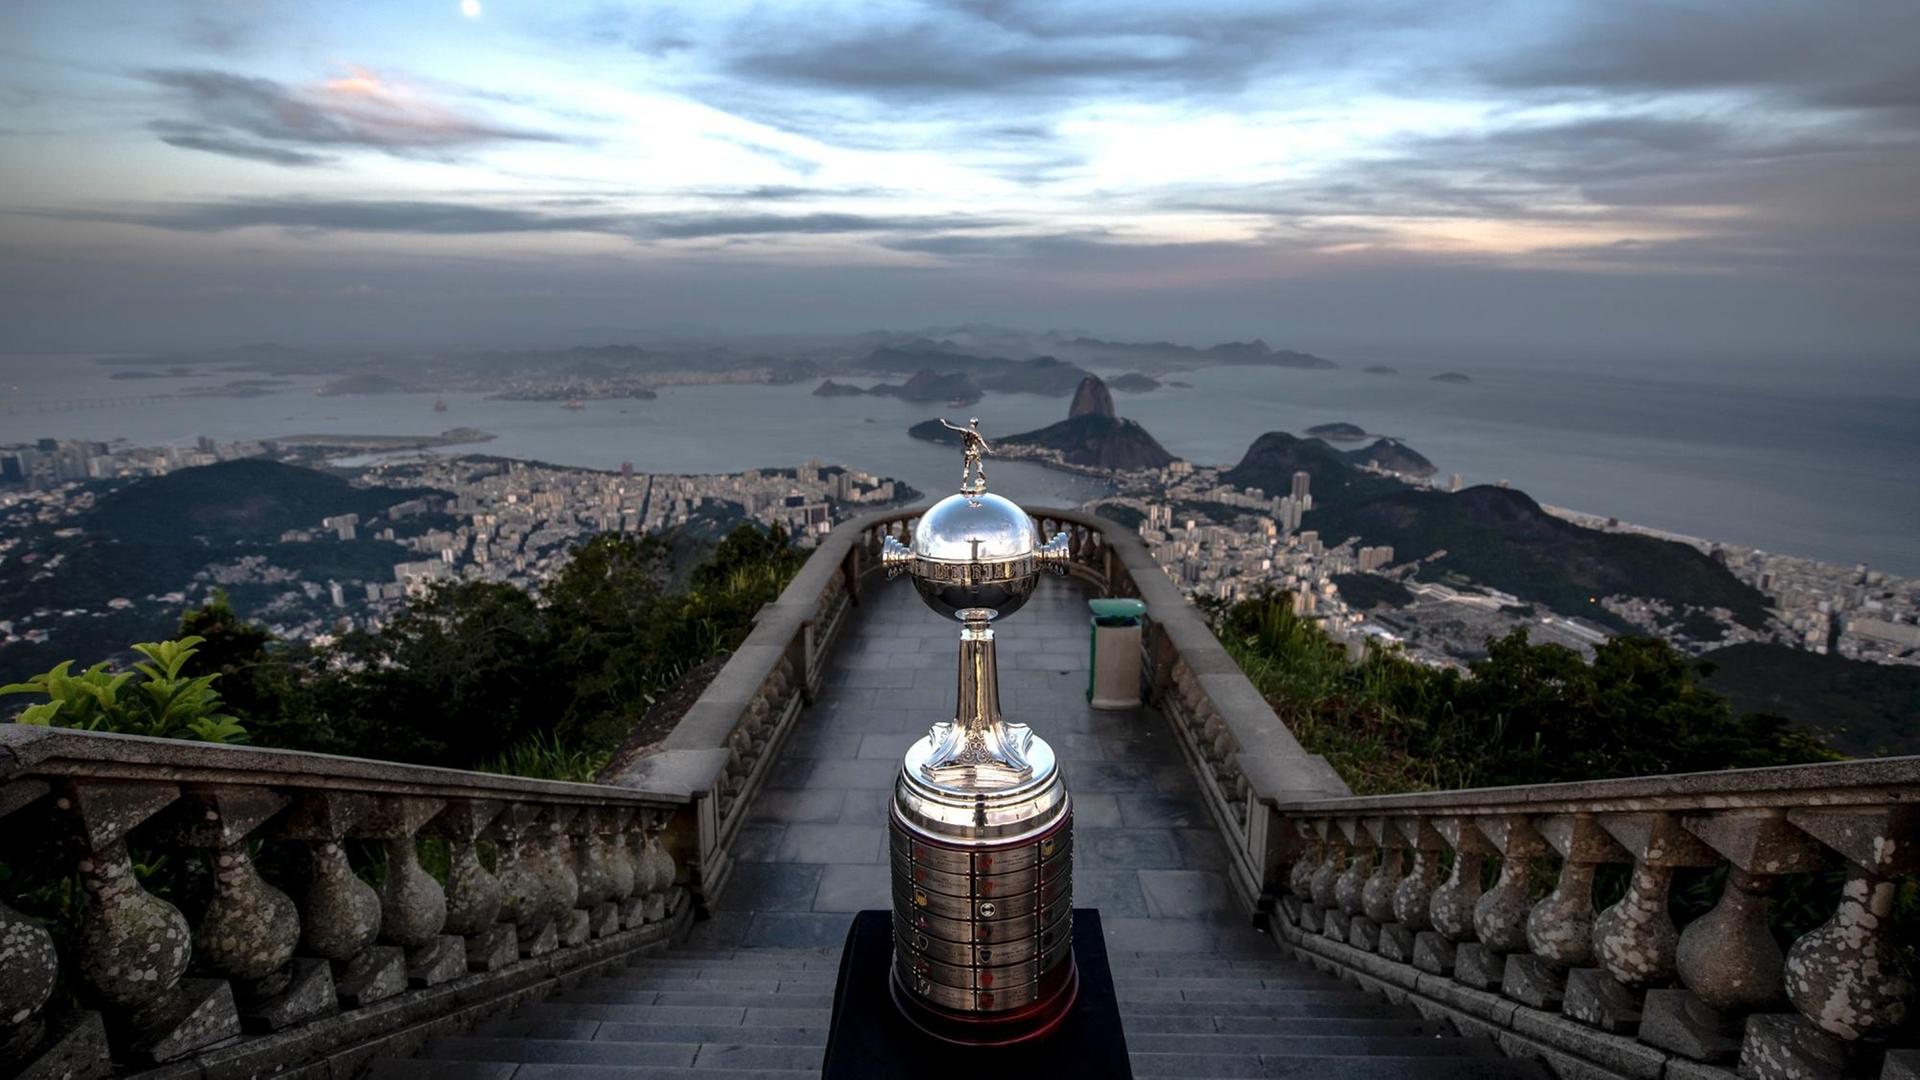 Der Pokal "thront" über Rio